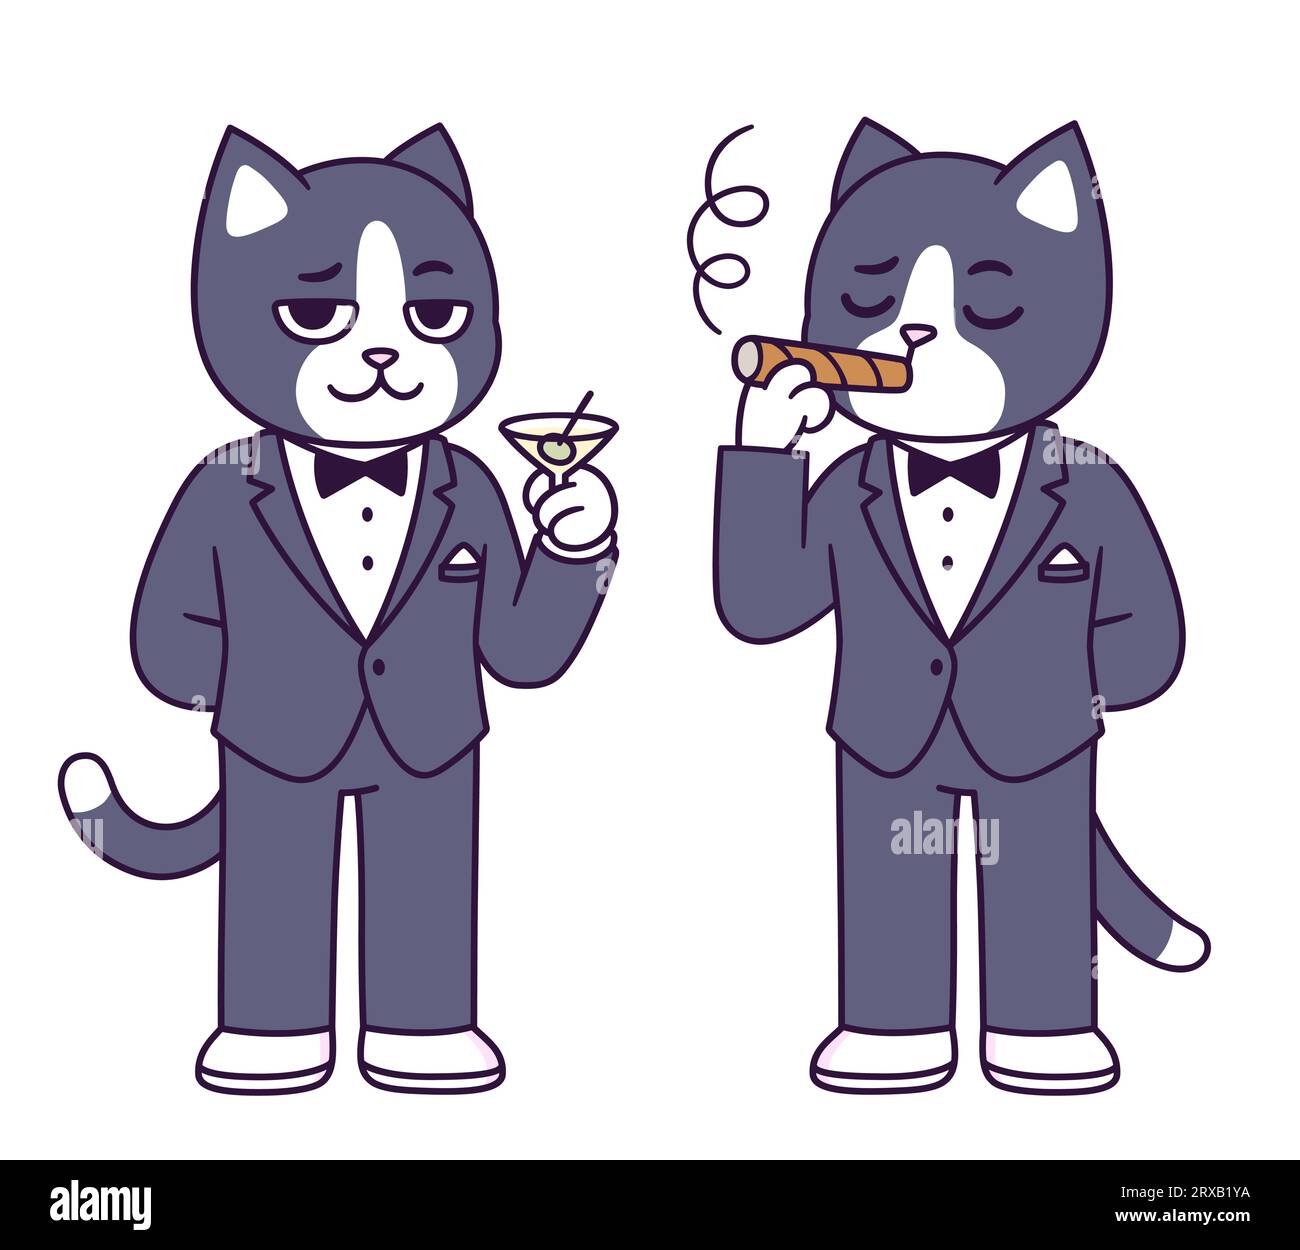 Tuxedo-Katze-Zeichentrickfigur. Lustige Katze in schwarzem Krawattenanzug mit Martiniglas und rauchender Zigarre. Niedliche Vektorillustration. Stock Vektor